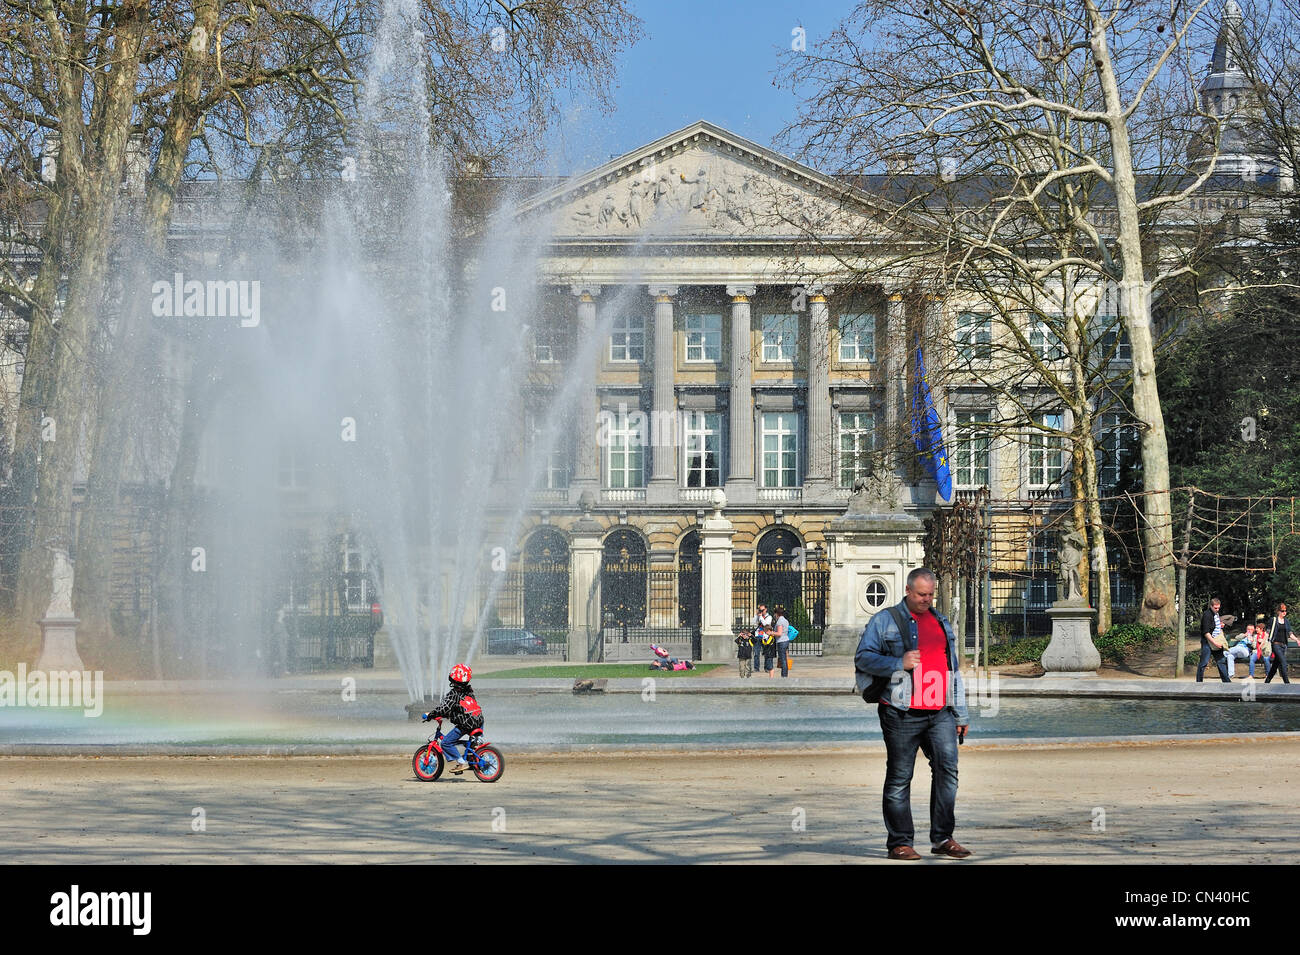 Fontaine au Parc de Bruxelles / Parc de Bruxelles / debout et le Parlement fédéral belge, Bruxelles, Belgique Banque D'Images